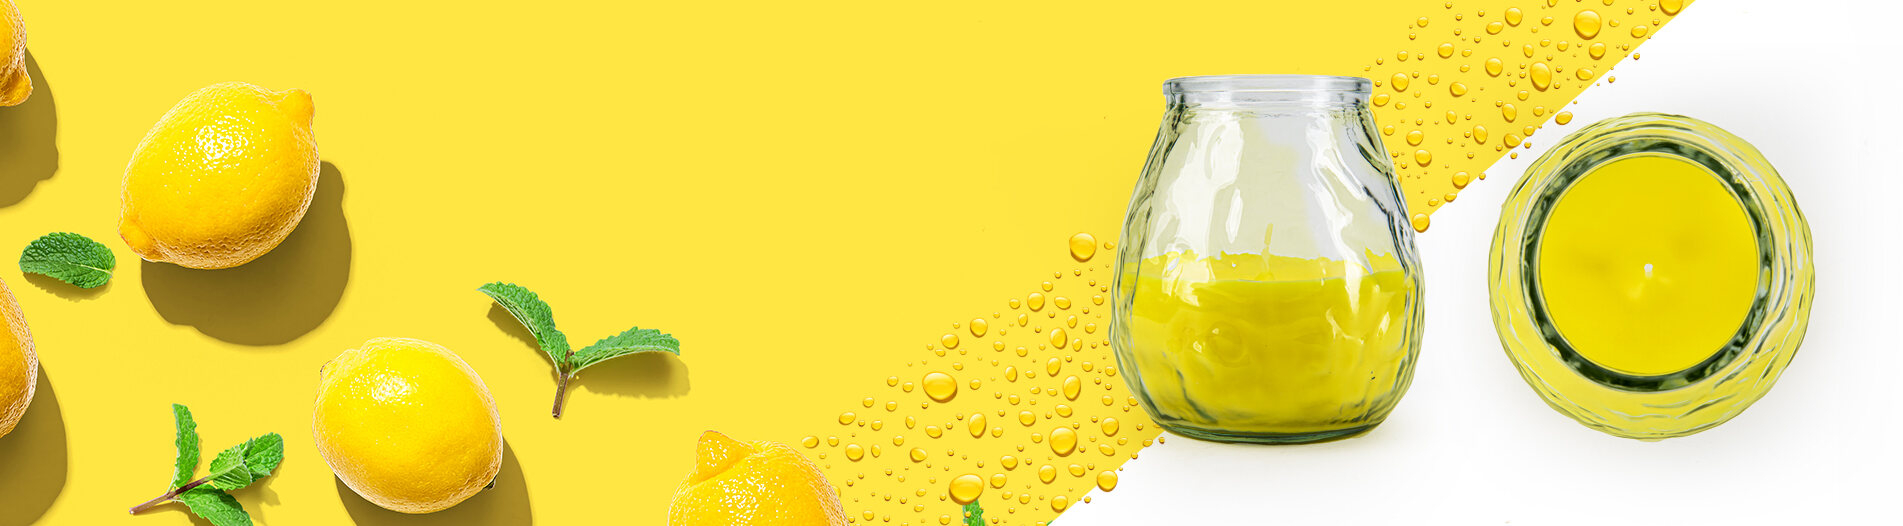 Citronella - świeca do ogrodu z olejkami eterycznymi